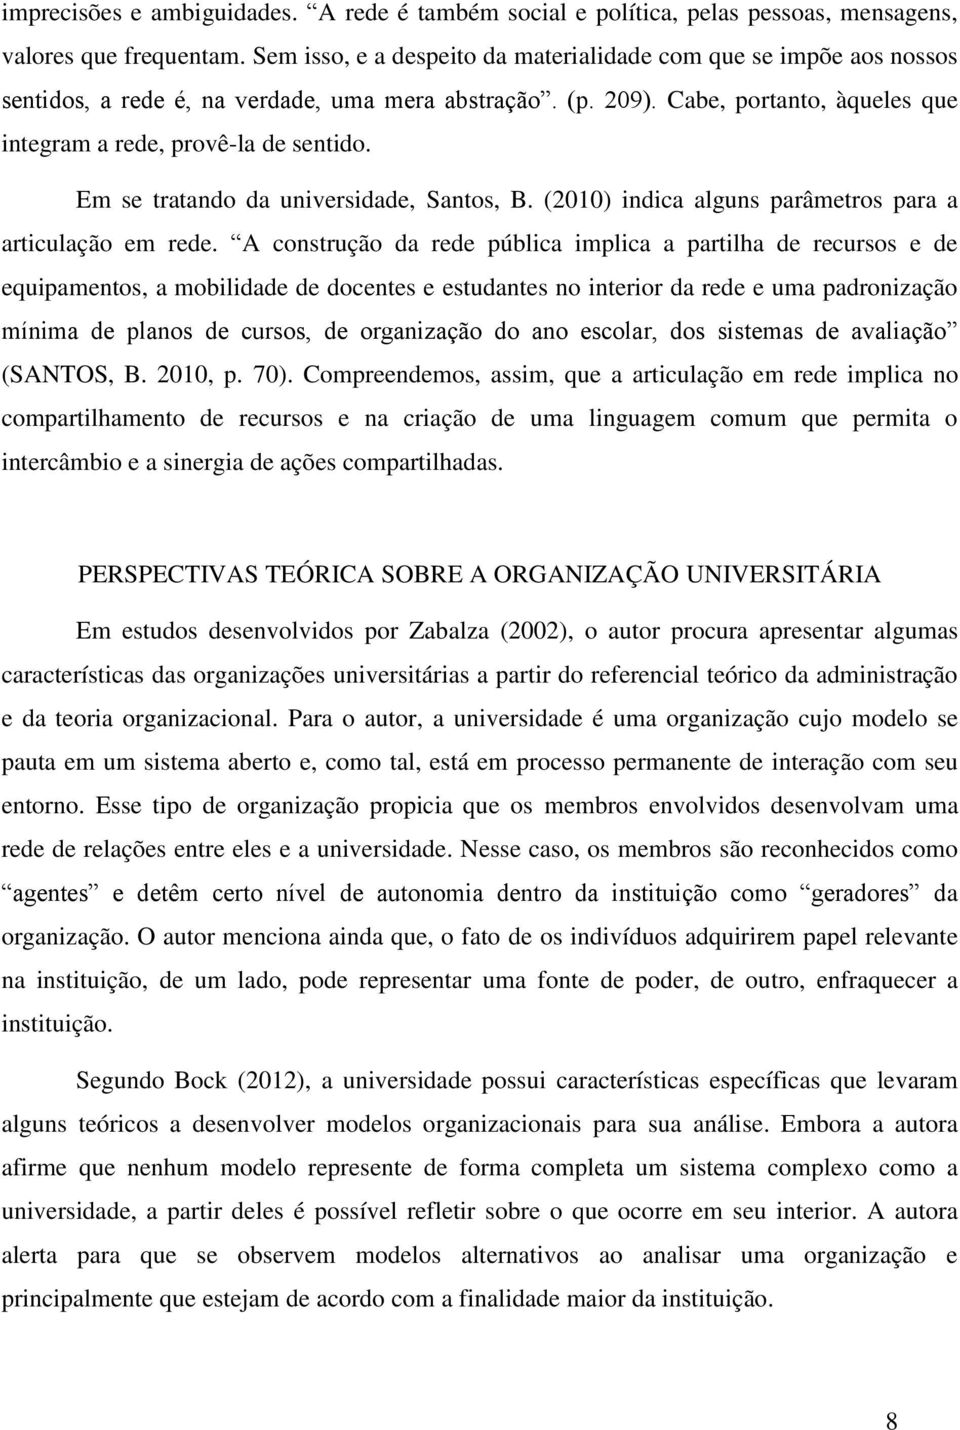 Em se tratando da universidade, Santos, B. (2010) indica alguns parâmetros para a articulação em rede.